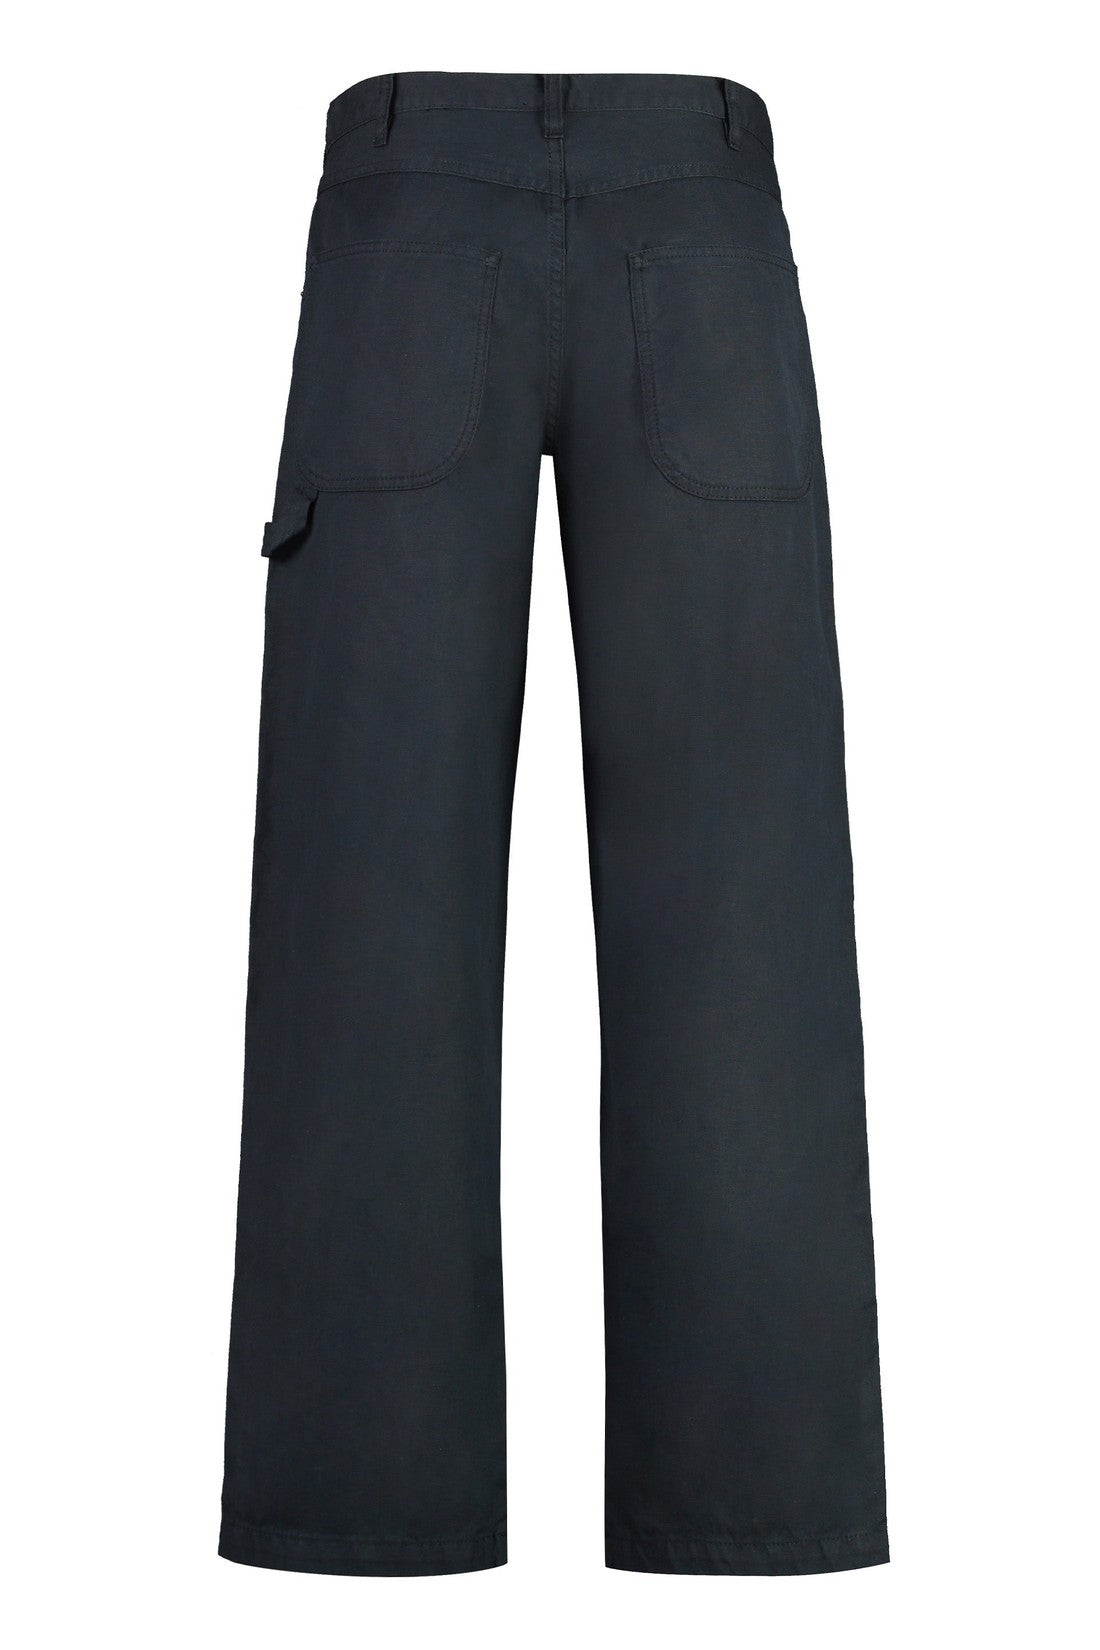 Marant-OUTLET-SALE-Cotton-linen trousers-ARCHIVIST